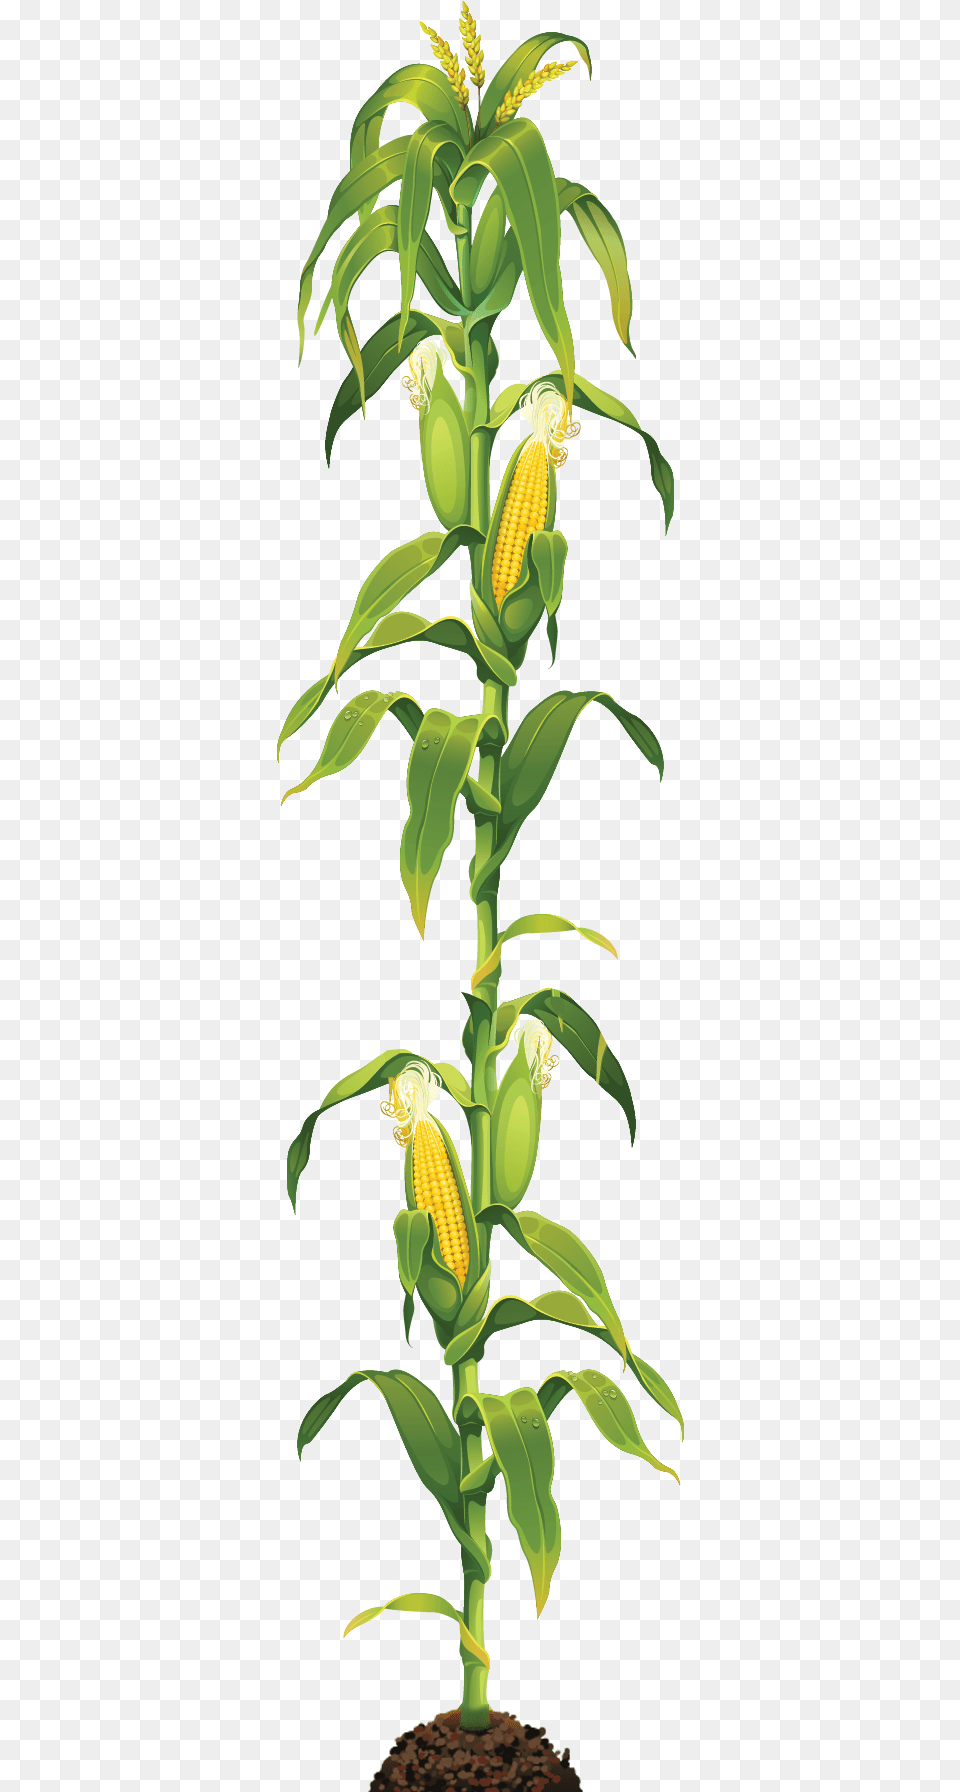 Corn Stalk, Plant, Leaf, Flower, Food Free Png Download